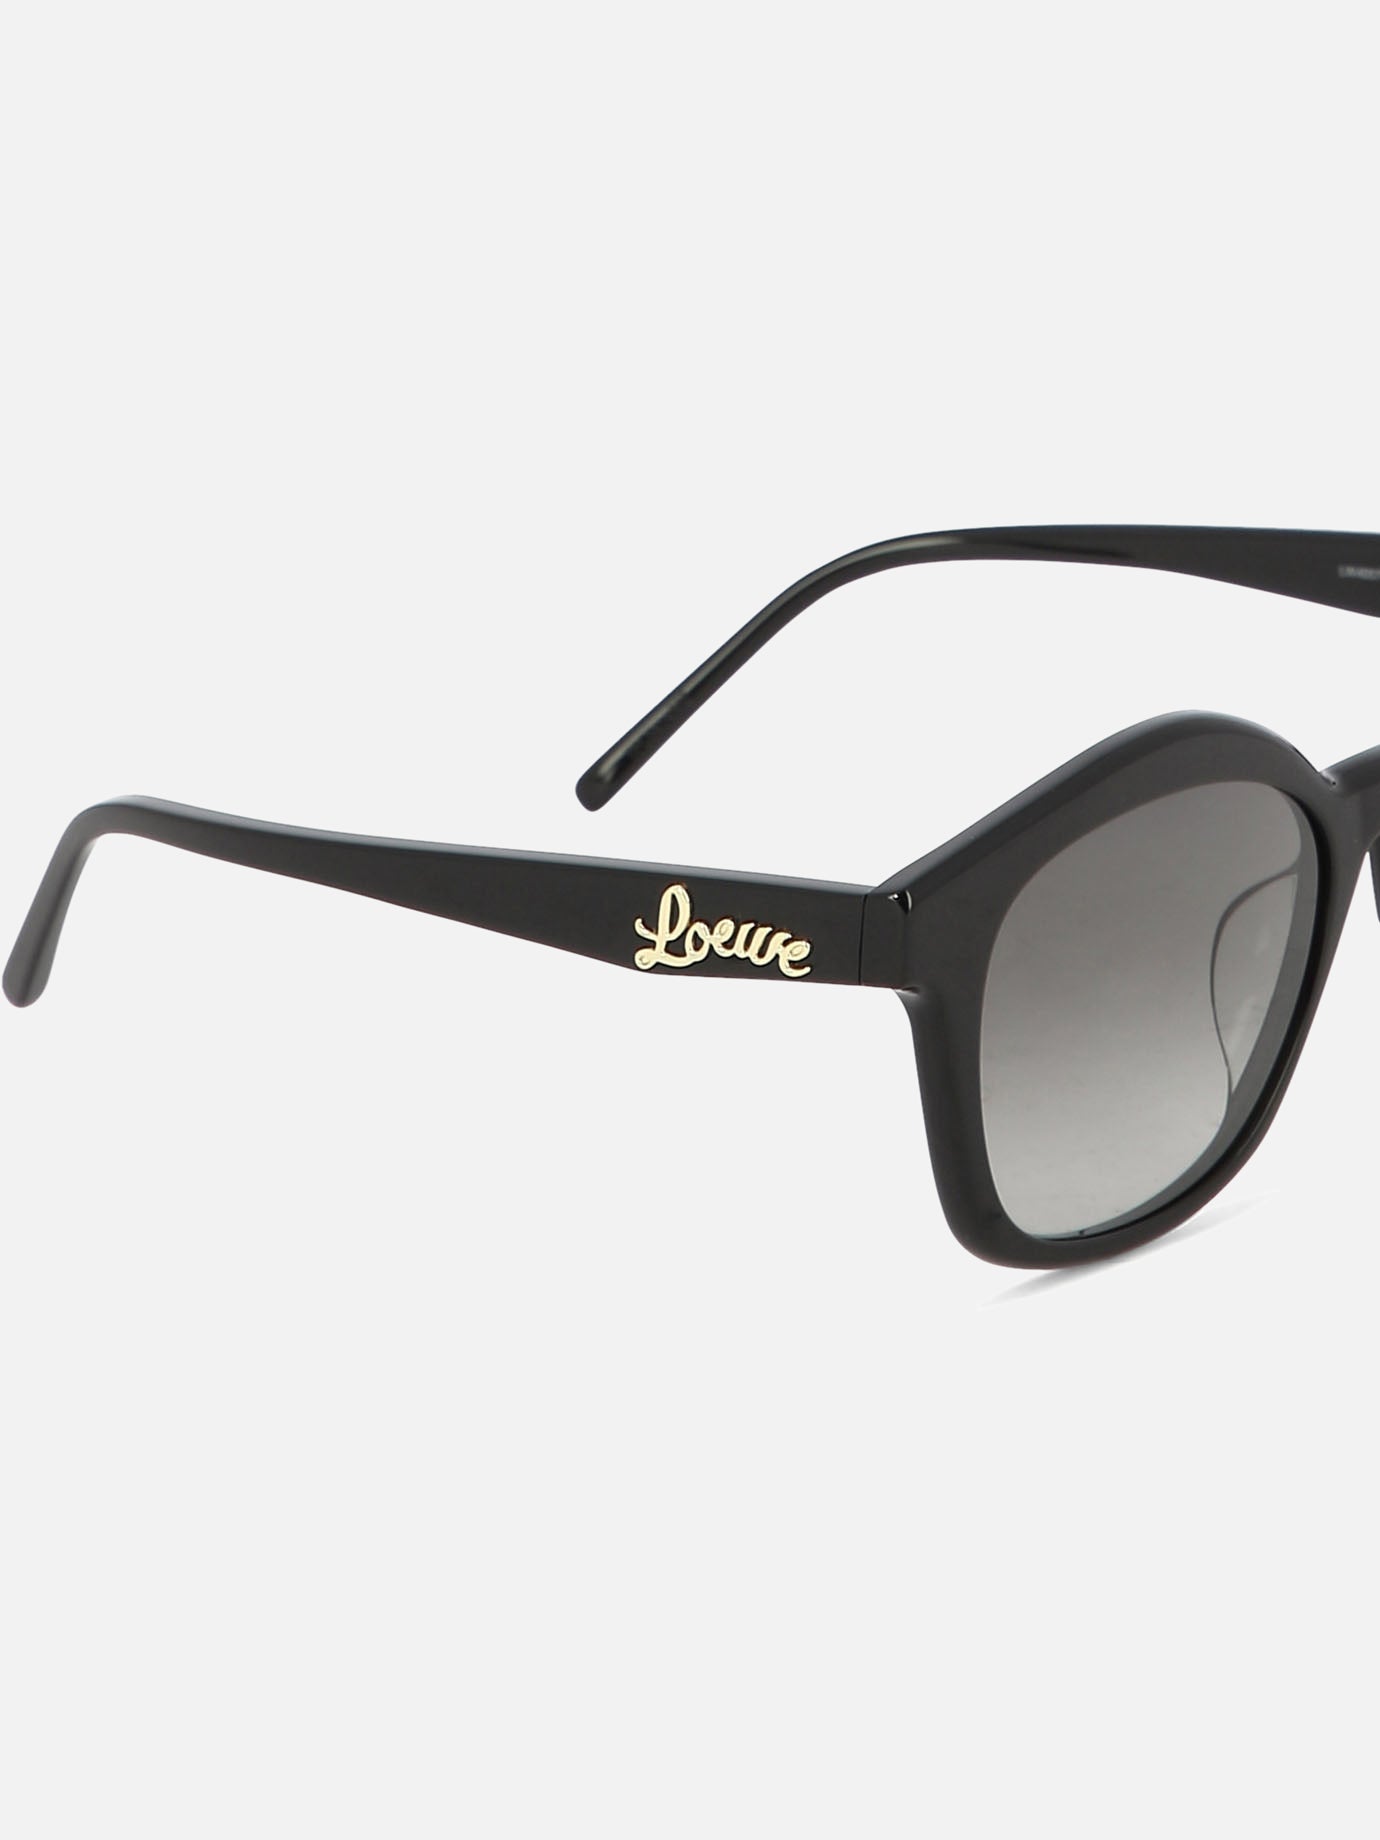 "Browline" sunglasses